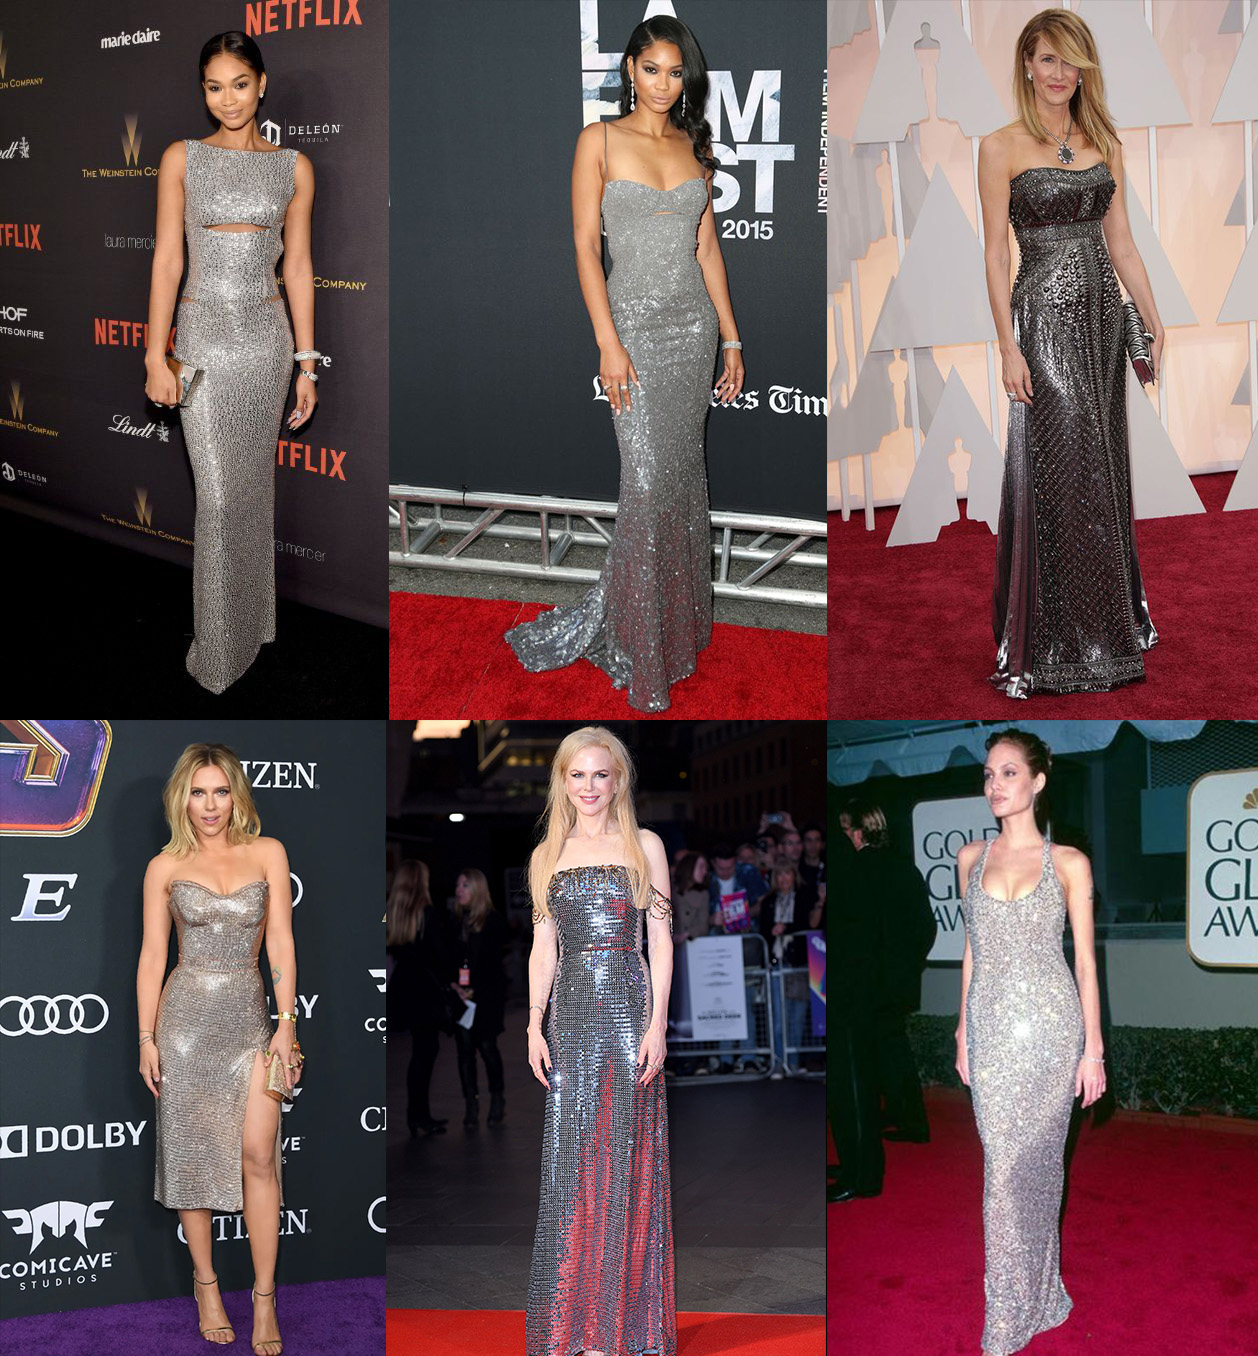 Những chiếc váy sequin được sao Hollywood diện trong nhiều thập kỉ qua nhìn thoáng qua thì có vẻ giống nhau nhưng mỗi thiết kế lại có những chi tiết riêng đặc trưng riêng, tôn vinh vóc dáng của từng người.